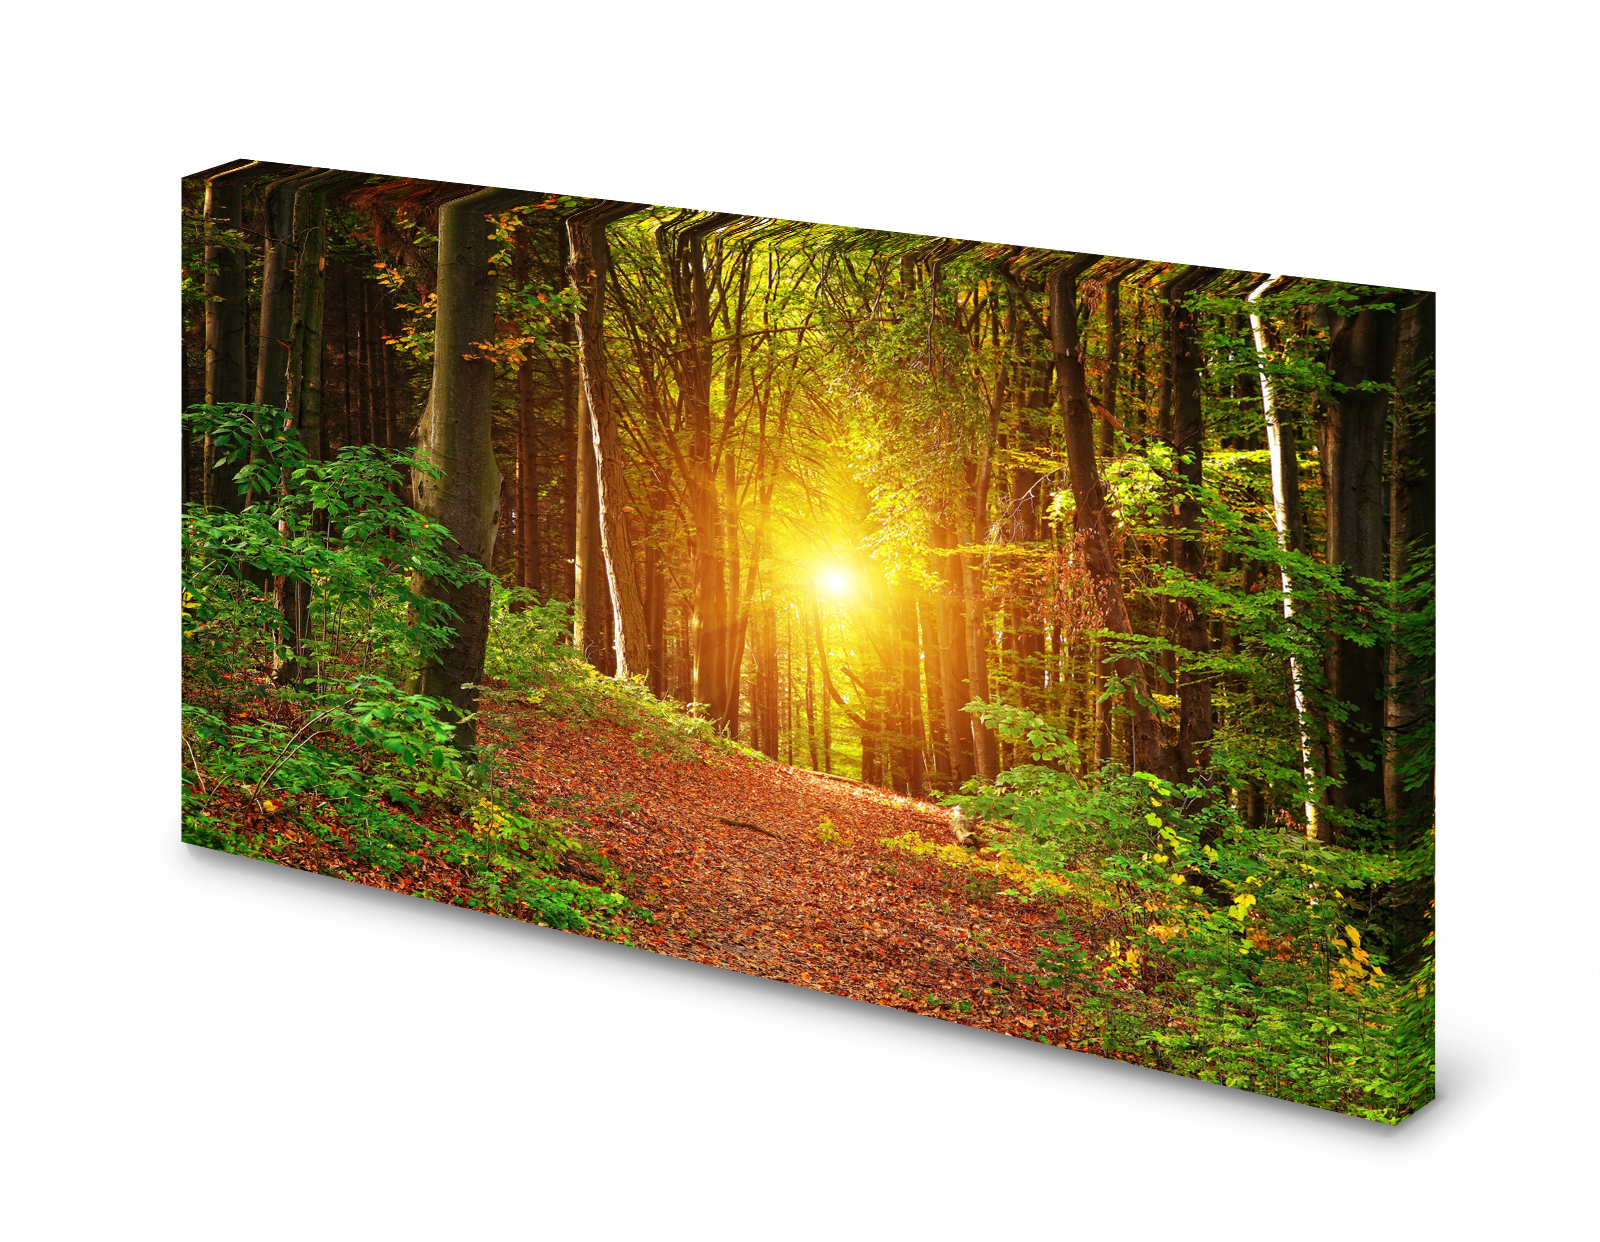 Magnettafel Pinnwand Bild Natur Wald Sonne Bäume Lichtung gekantet